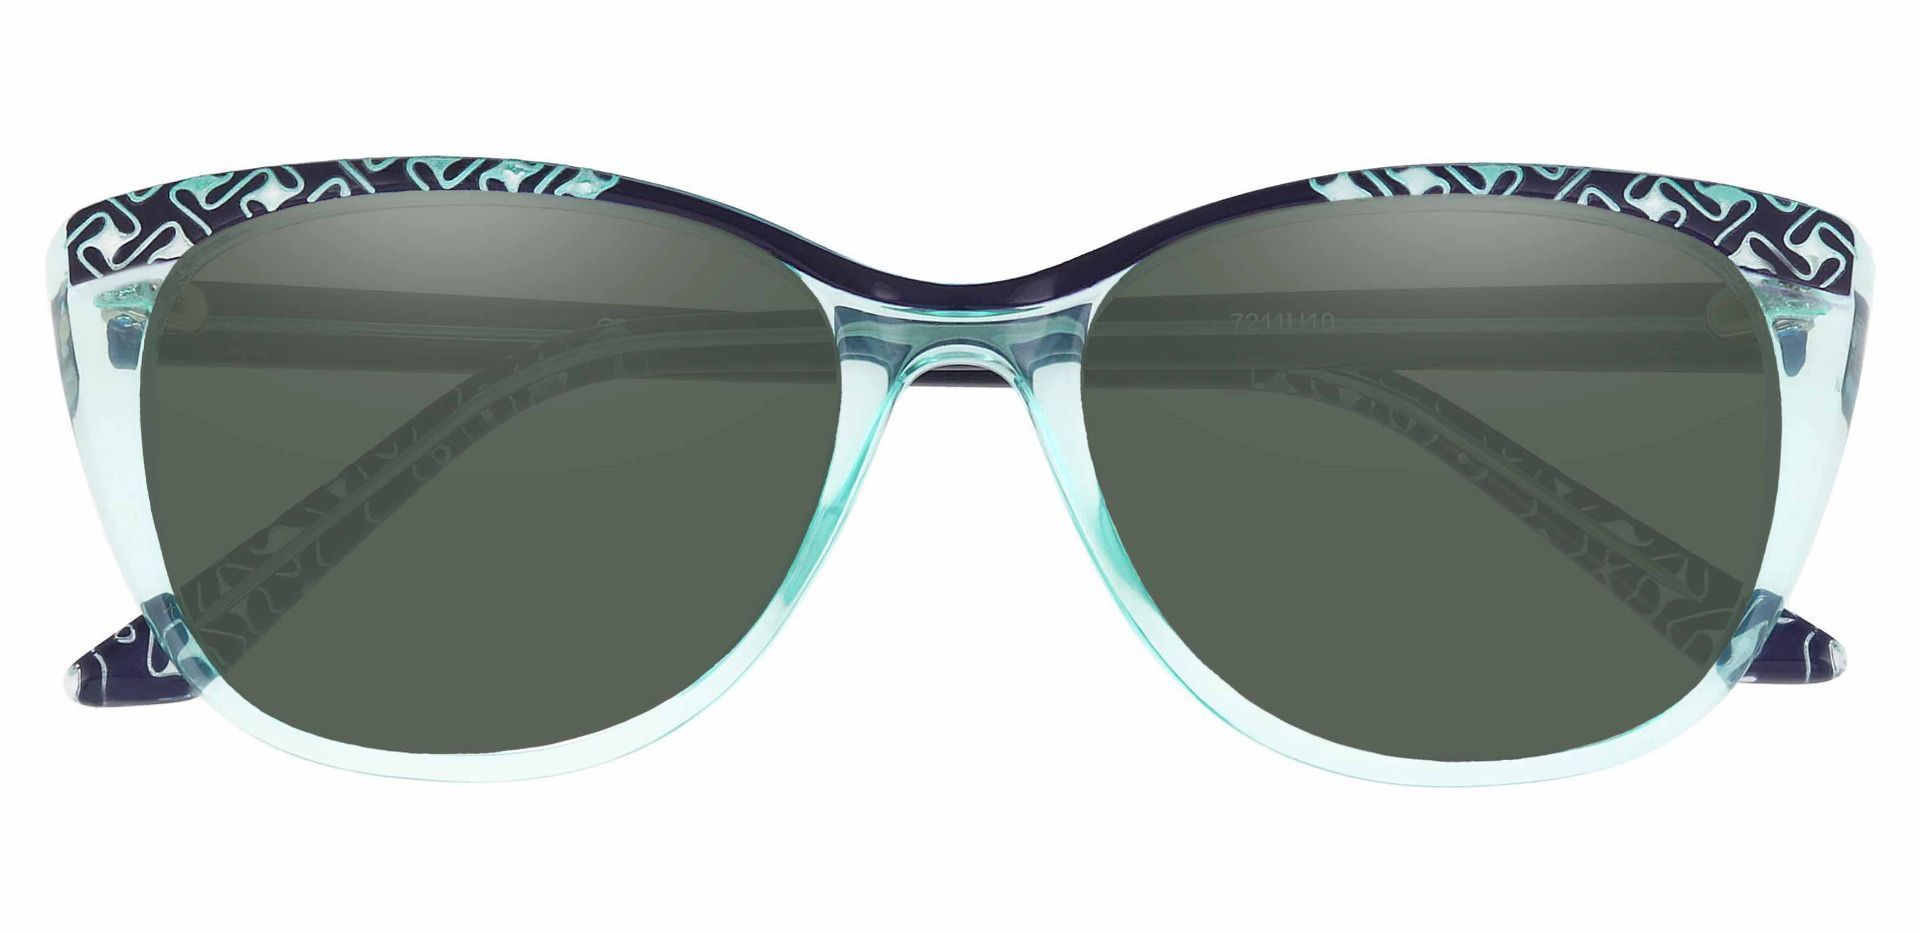 Alberta Cat Eye Prescription Sunglasses - Blue Frame With Green Lenses